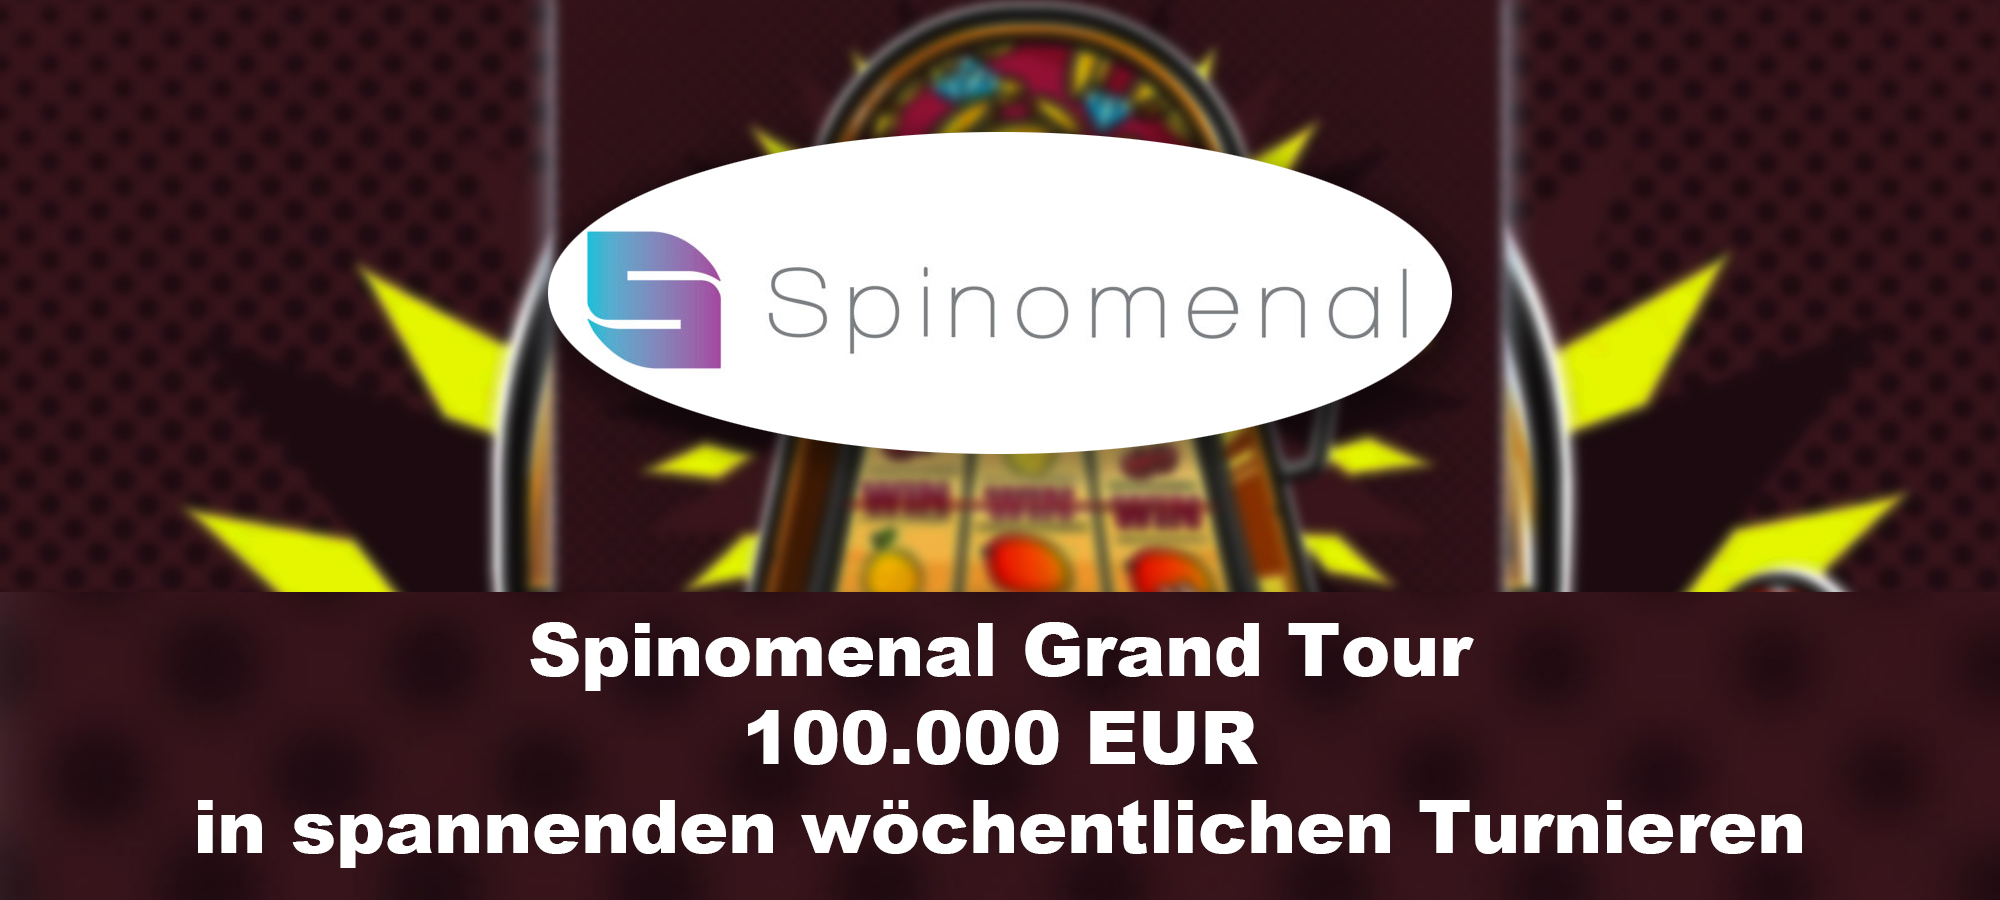 Spinomenal Grand Tour: Spannende Turniere und großzügige Gewinne